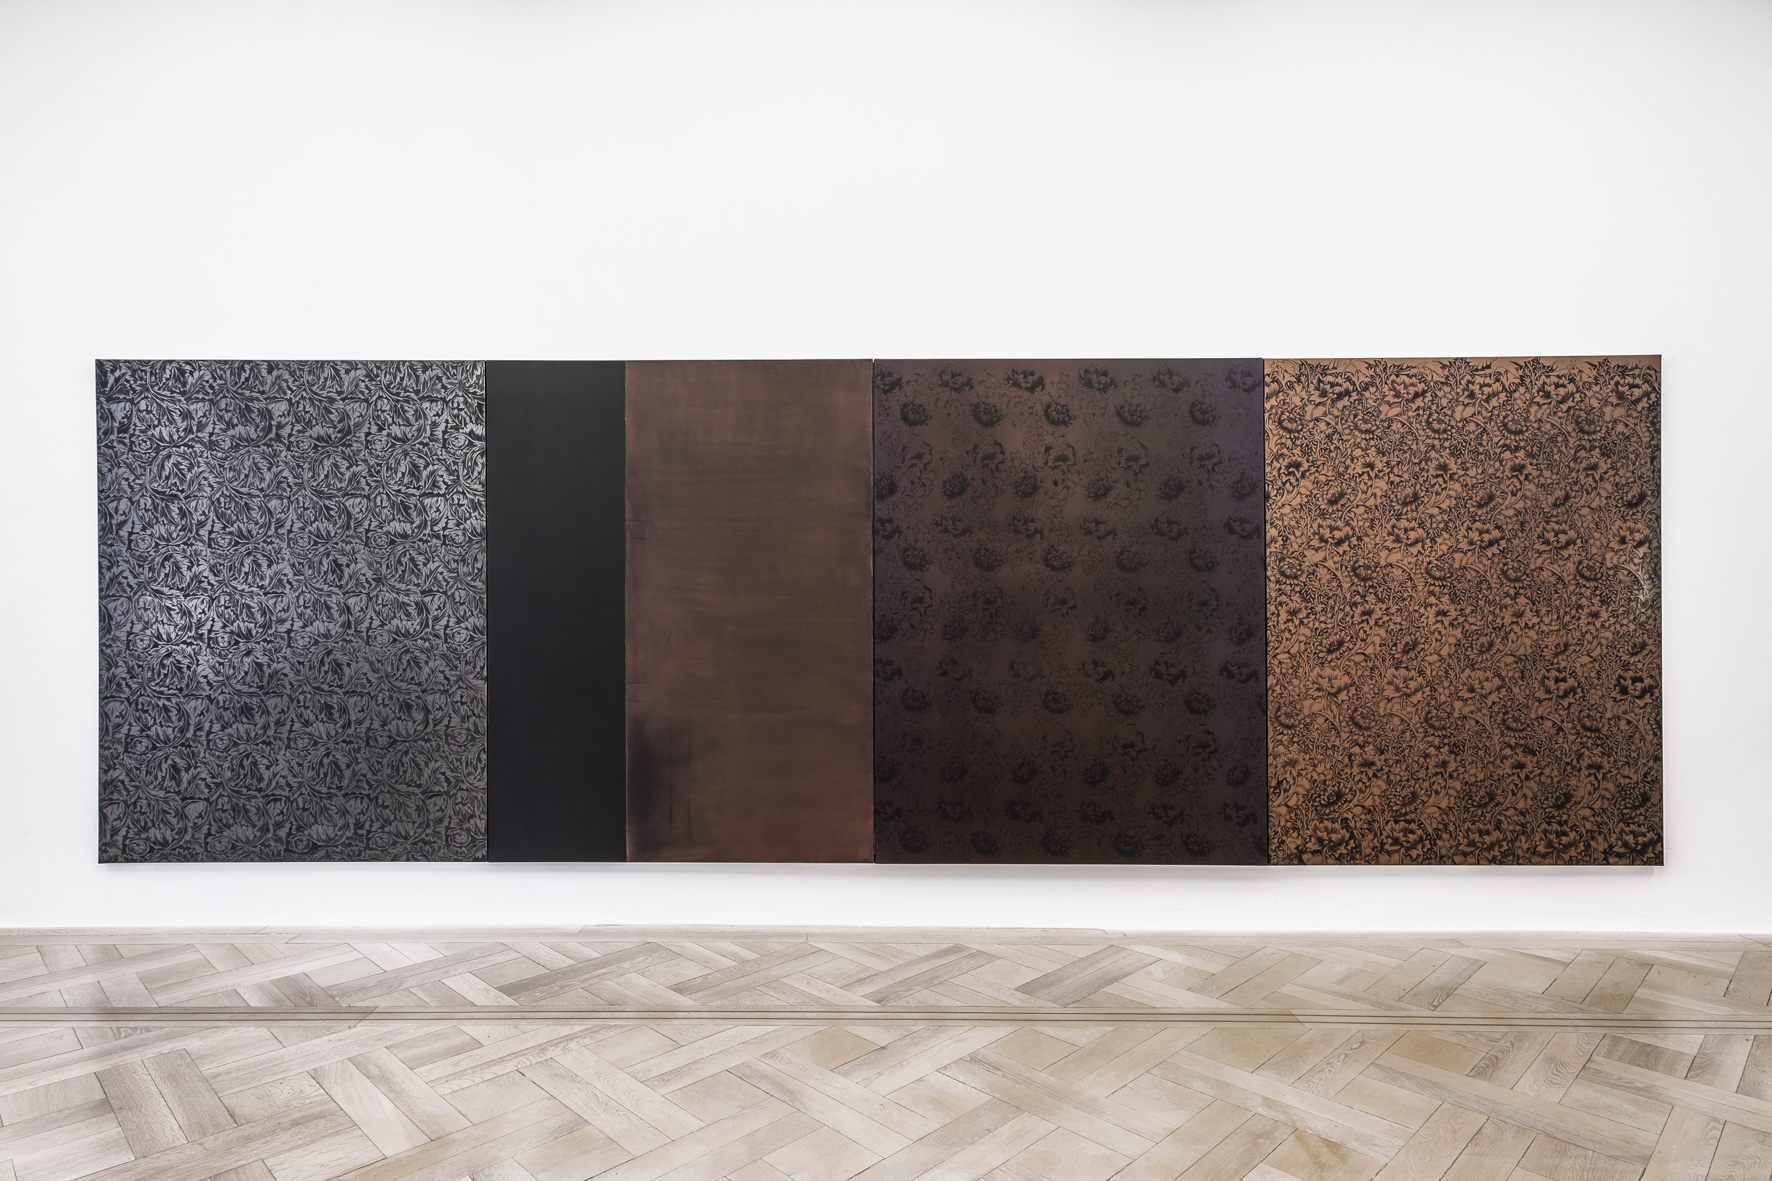 Anne Laure Sacriste, Orion Aveugle, Exhibition View, 2015, 195x150 cm, galerie Vera Munro, picture : Arnt Haug © ADAGP, Paris, 2021